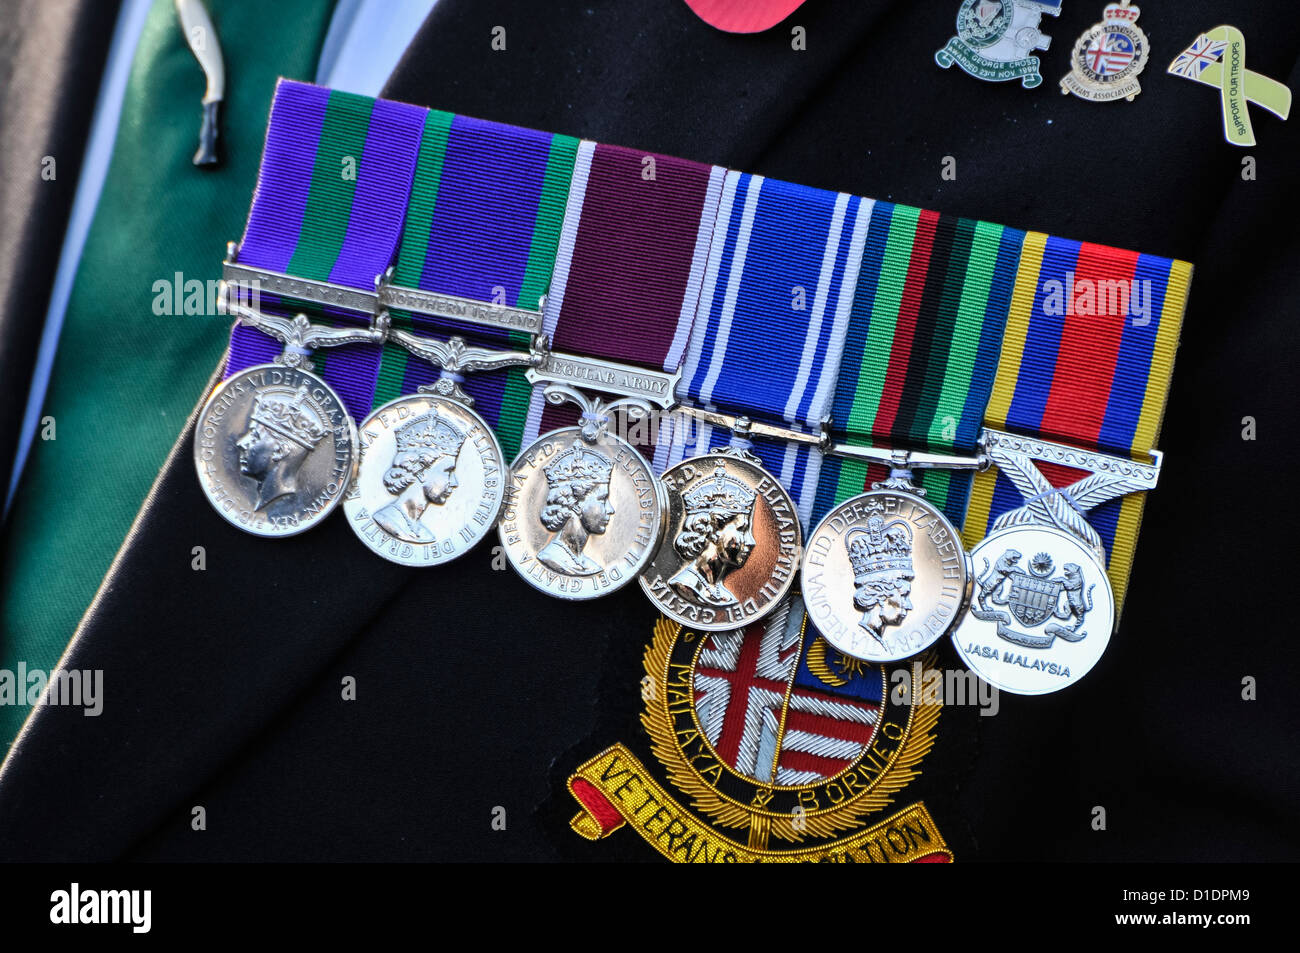 Veterano de Malaya y Borneo llevaba seis medallas Foto de stock